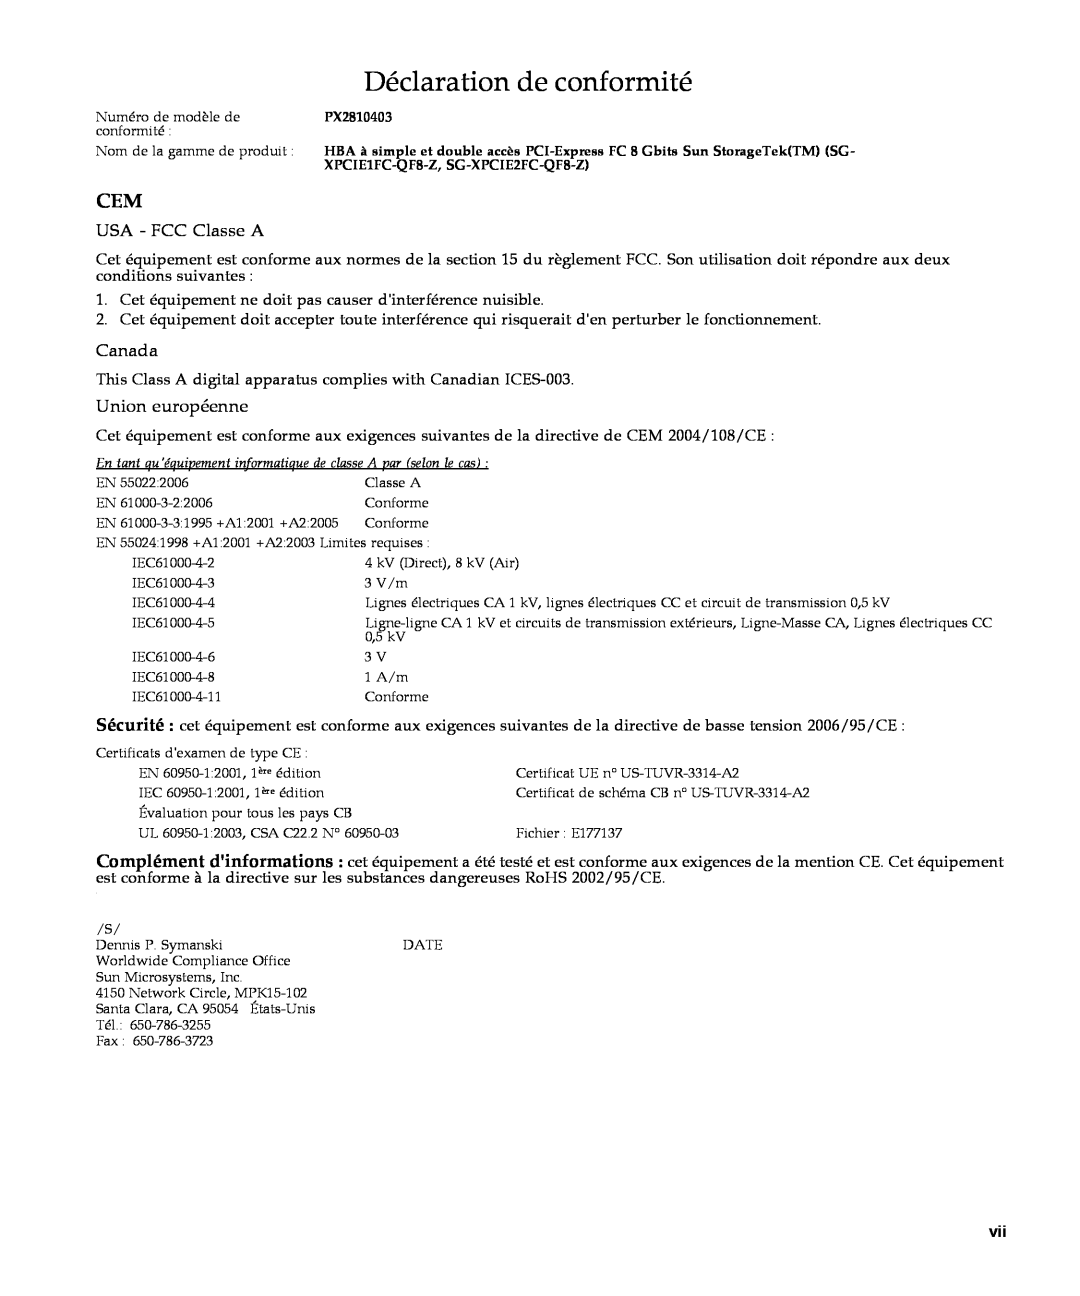 Sun Microsystems SG-XPCIE1FC-QF8-Z manual Déclaration de conformité, USA - FCC Classe A, Canada, Union européenne 